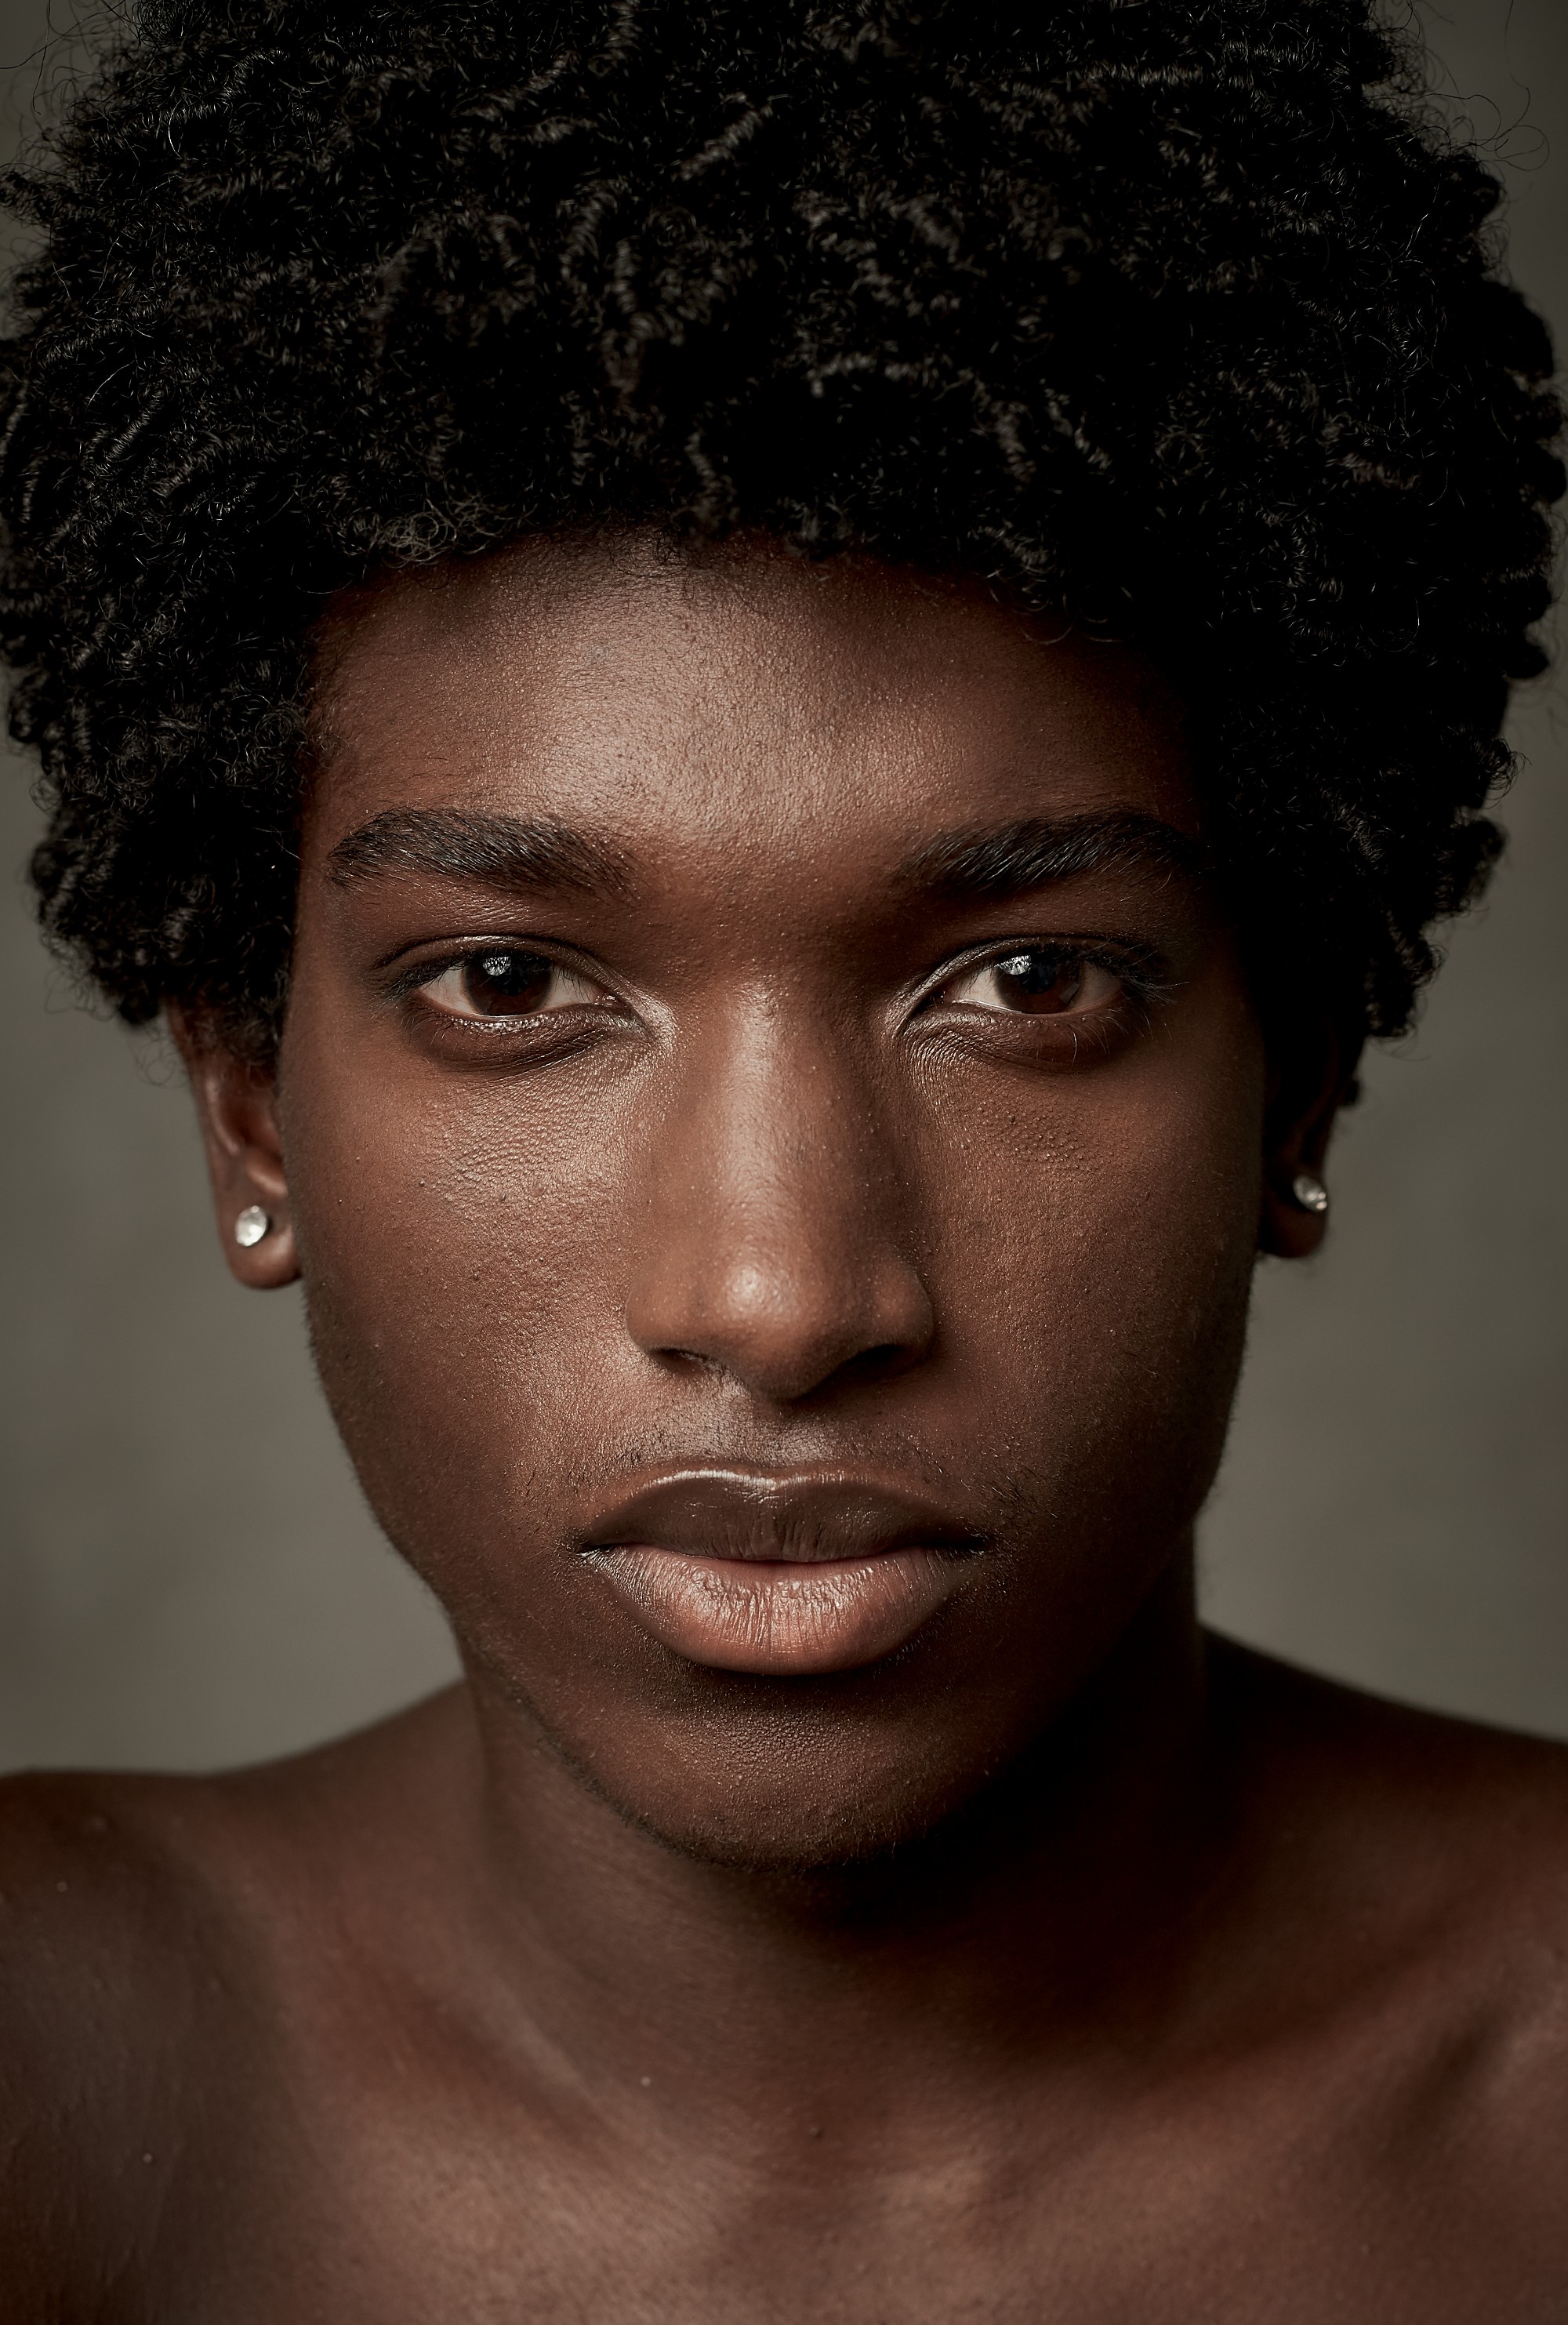 Black power: Símbolos de resistência e beleza, cachos e crespos, como o do modelo Gabriel Pitta, atravessam gerações e criam tendências (Foto: Gustavo Arraes)